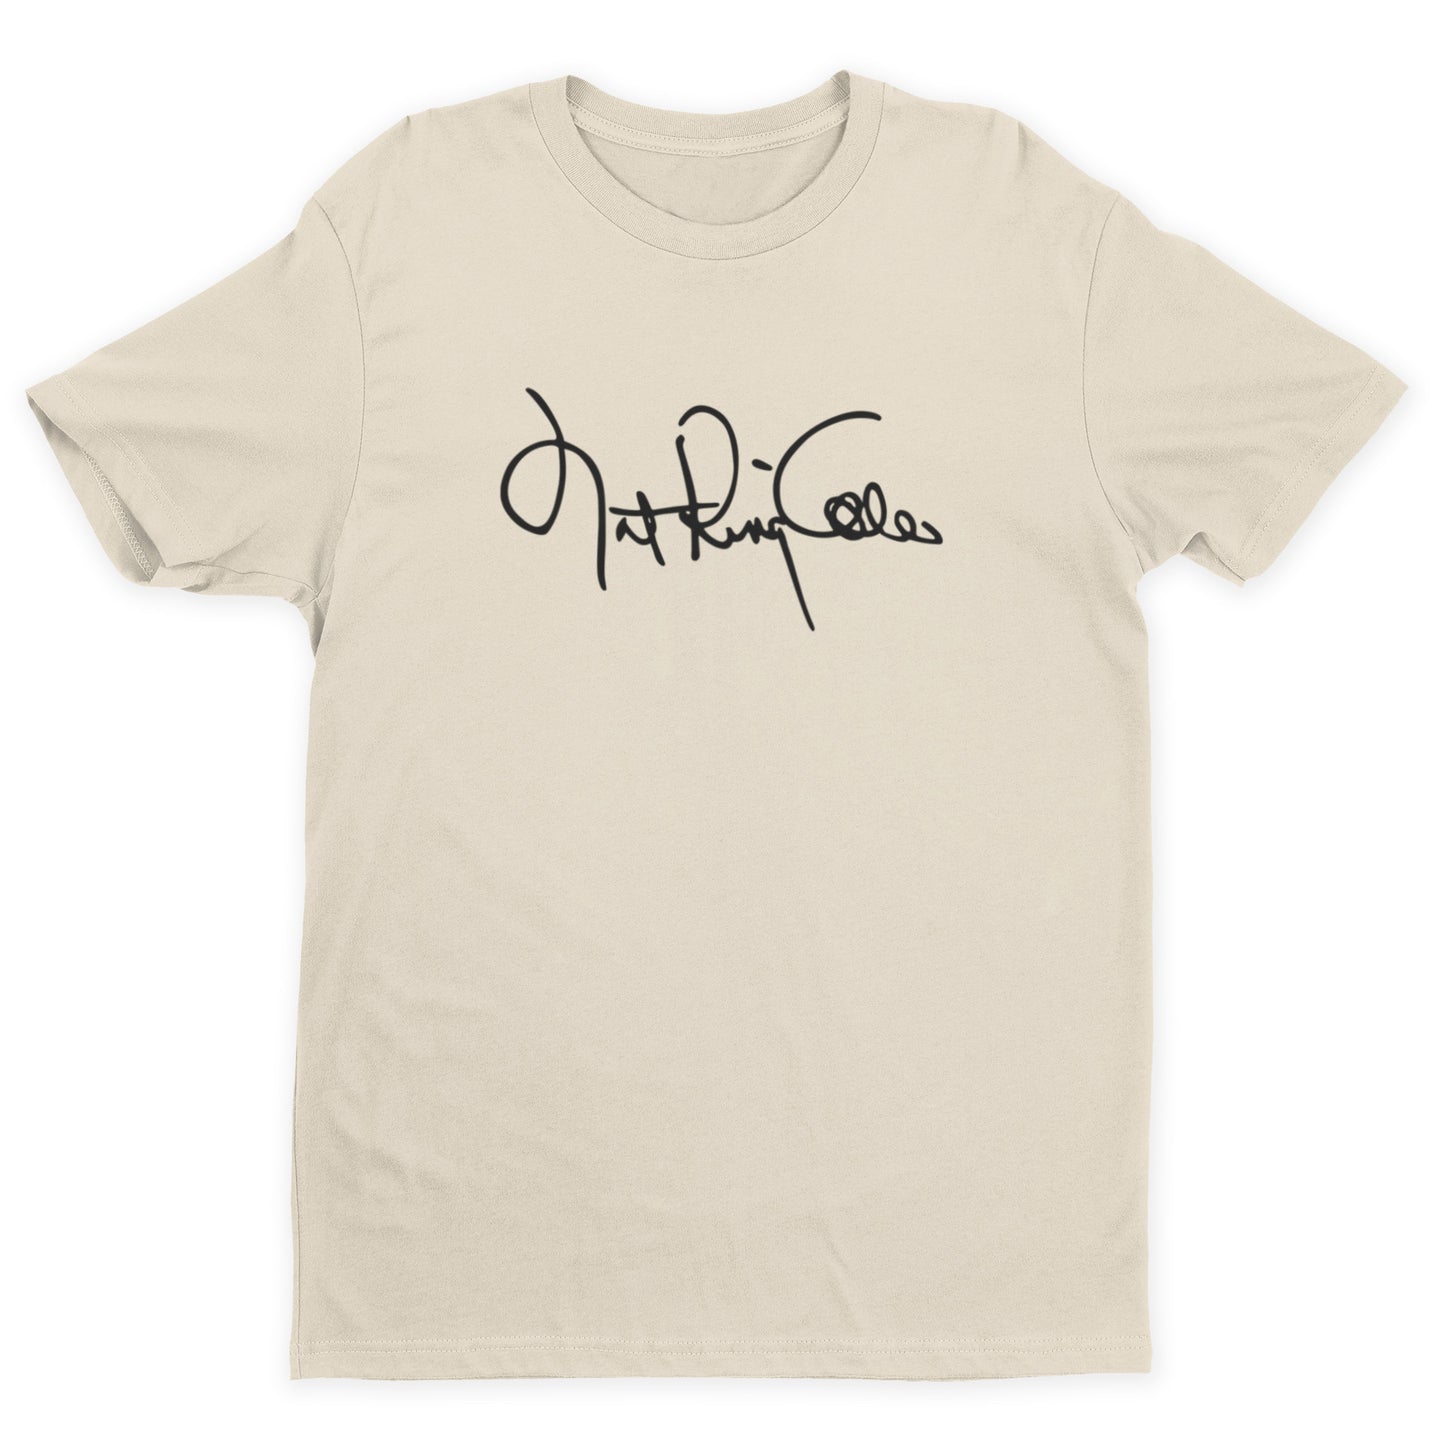 Nat King Cole Signature T-Shirt - Natural